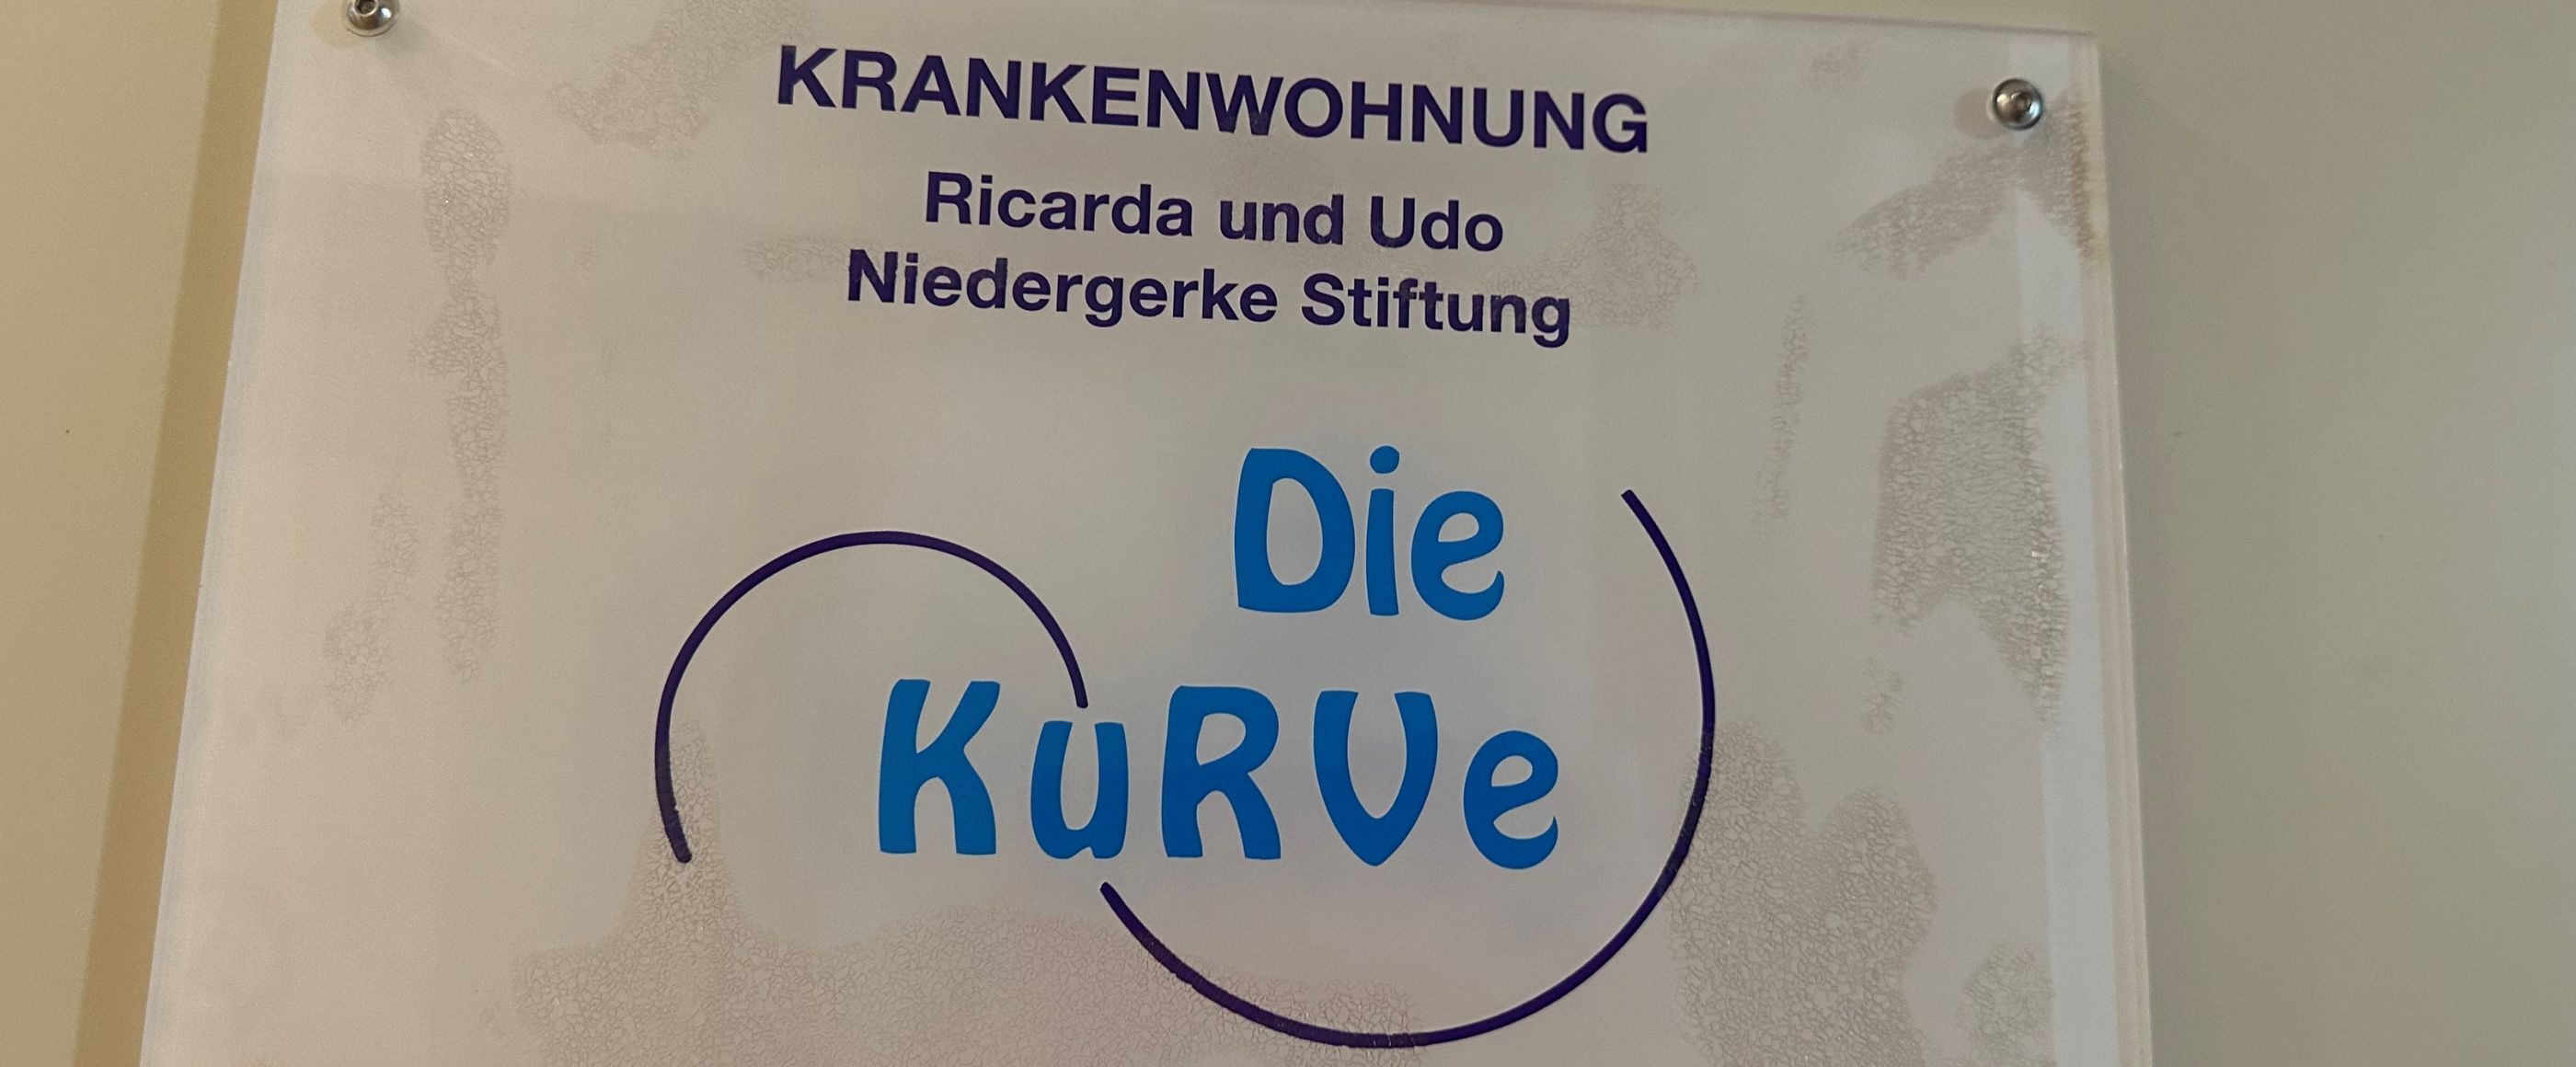 Ein Schild an der Wand, in blauer Schrift steht die Kurve drauf. Darüber in schwarzer Schrift: Krankenwohnung, Ricard und Udo Niedergerke Stiftung. 